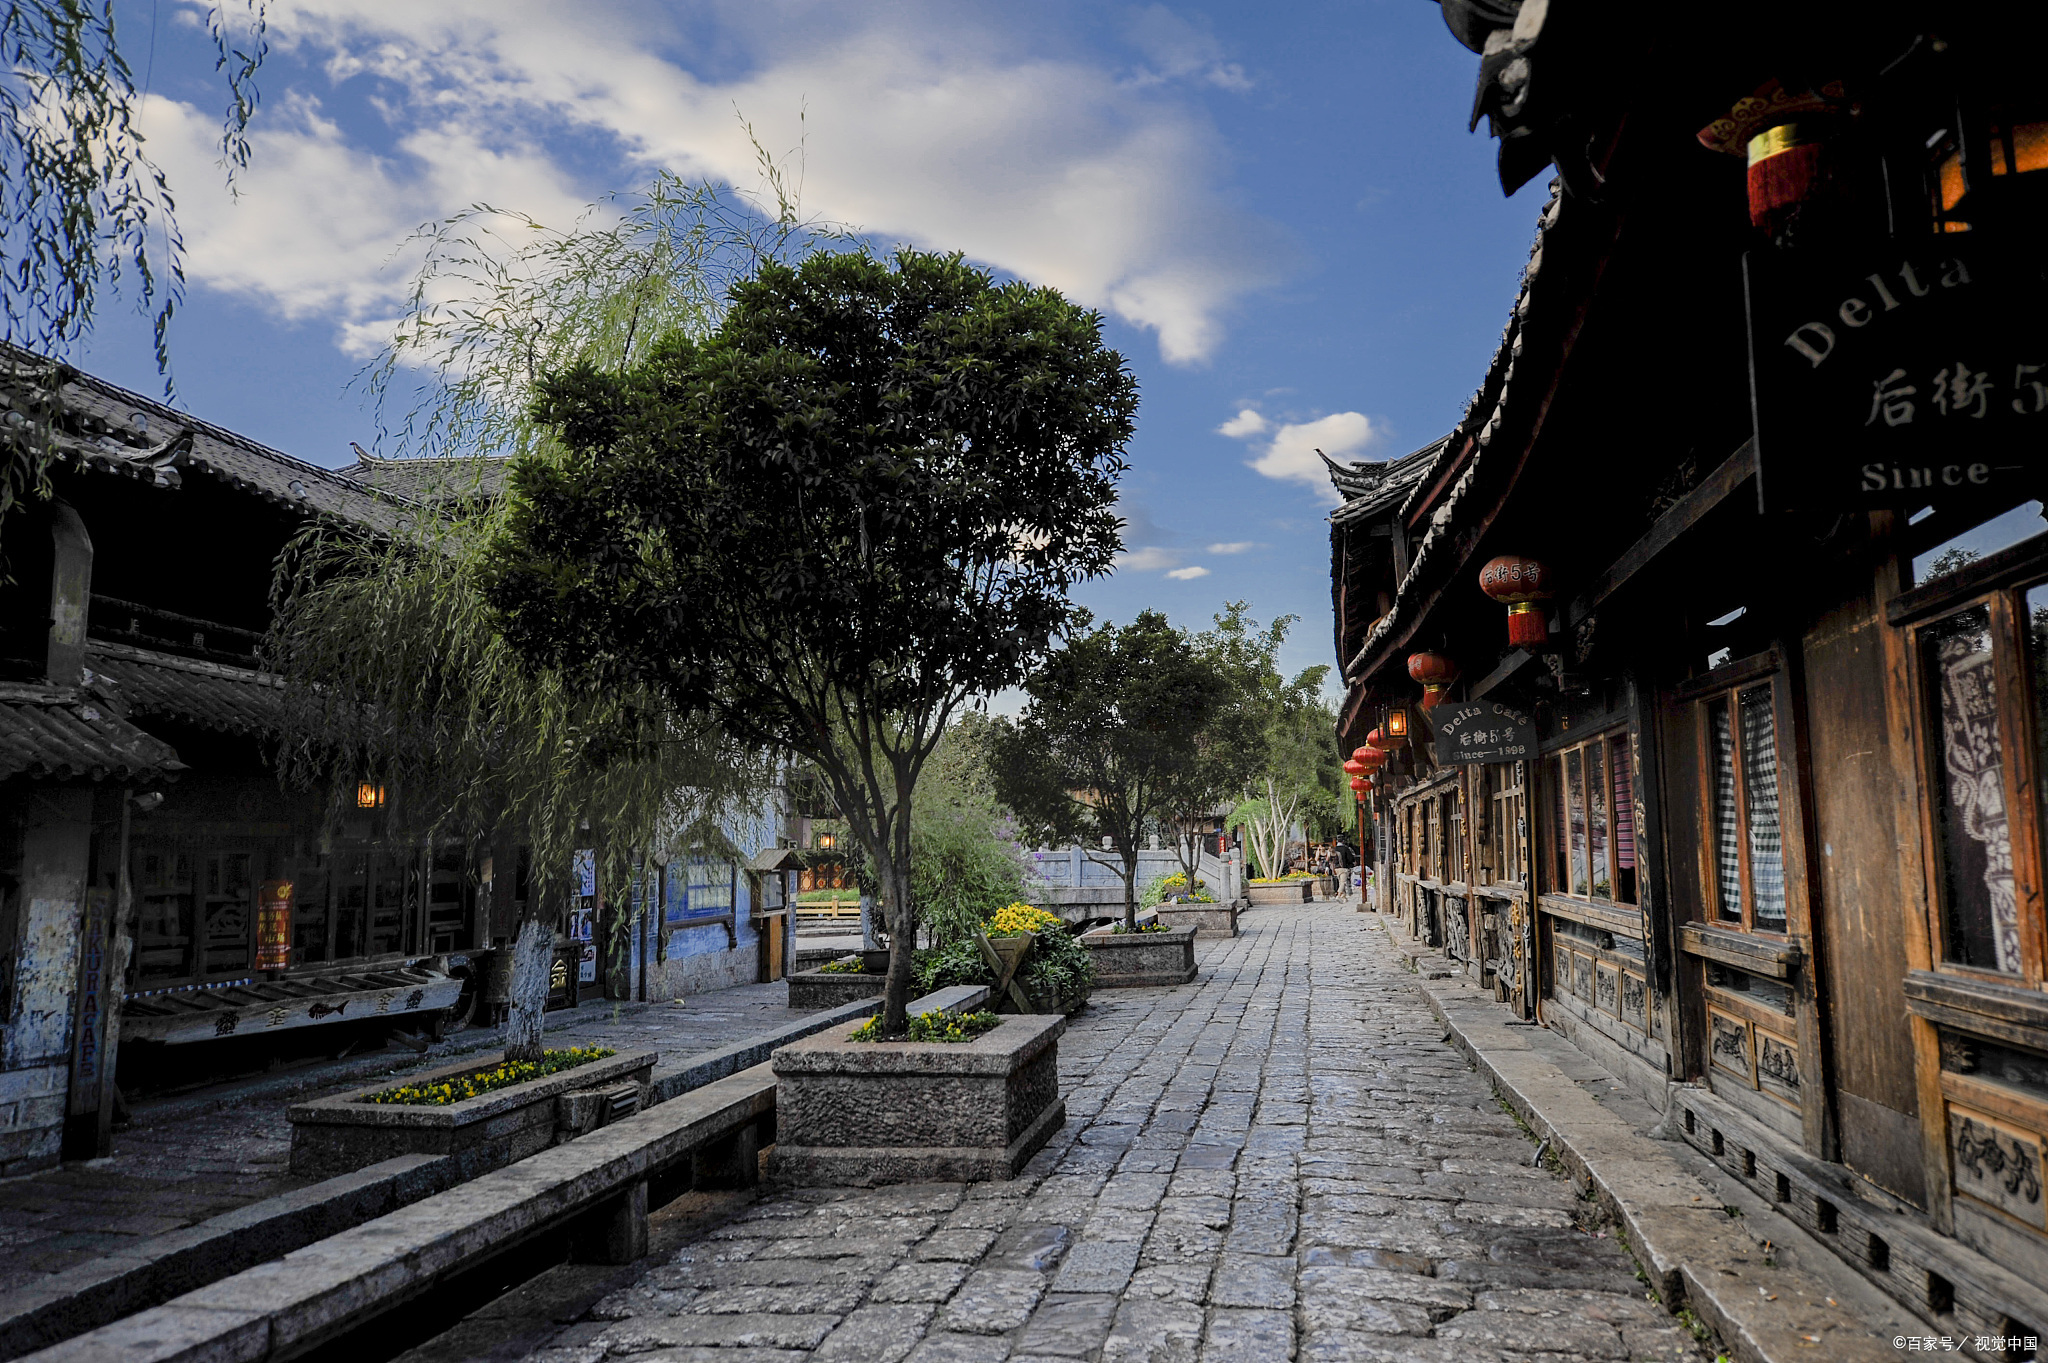 丽江白沙古镇是位于中国云南省丽江市的一个历史文化